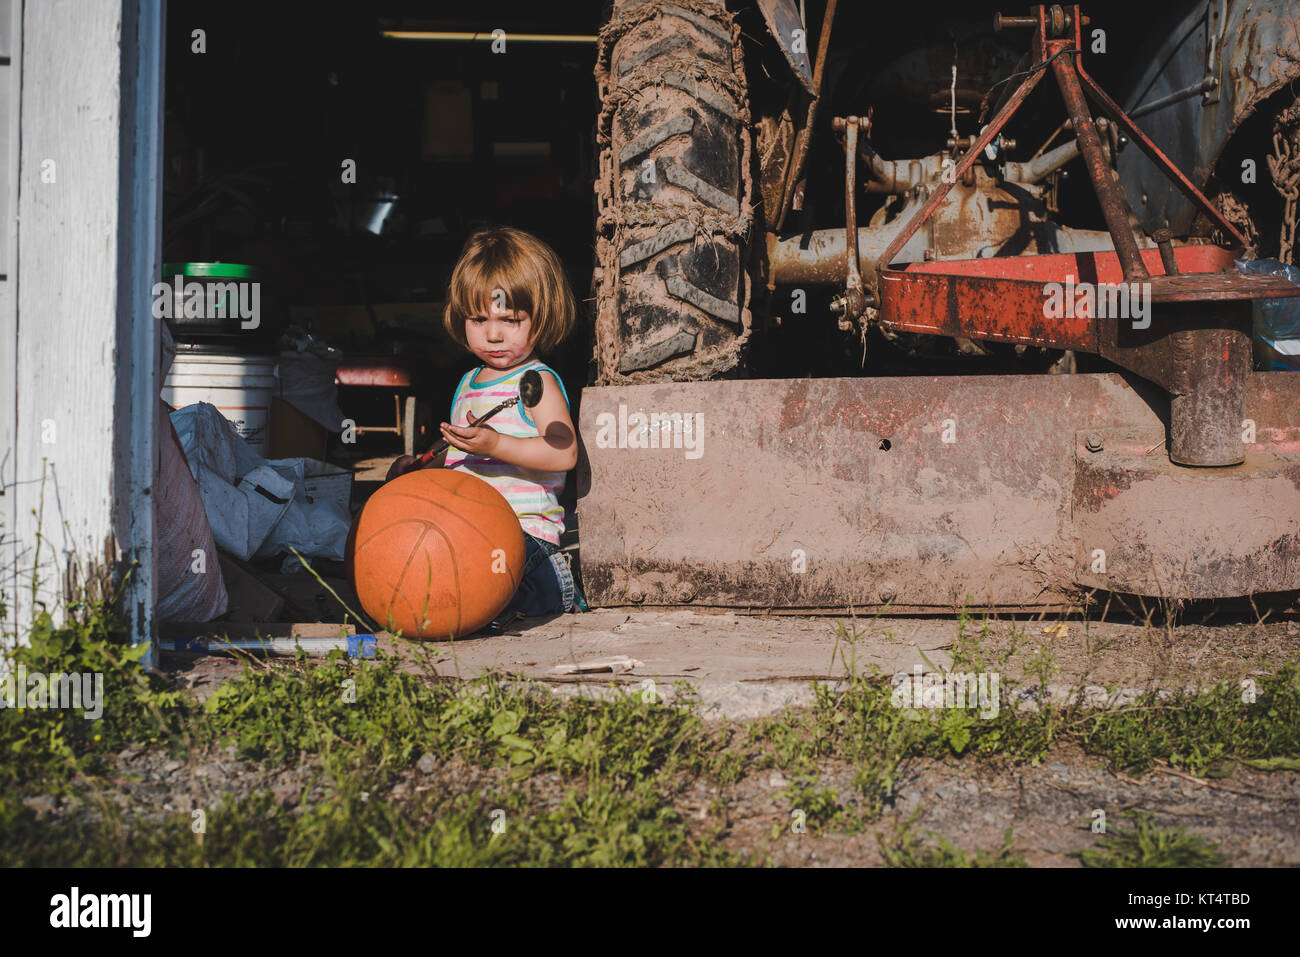 Une petite fille est assise à côté d'un tracteur et d'une antique de  basket-ball orange dans une porte de garage Photo Stock - Alamy